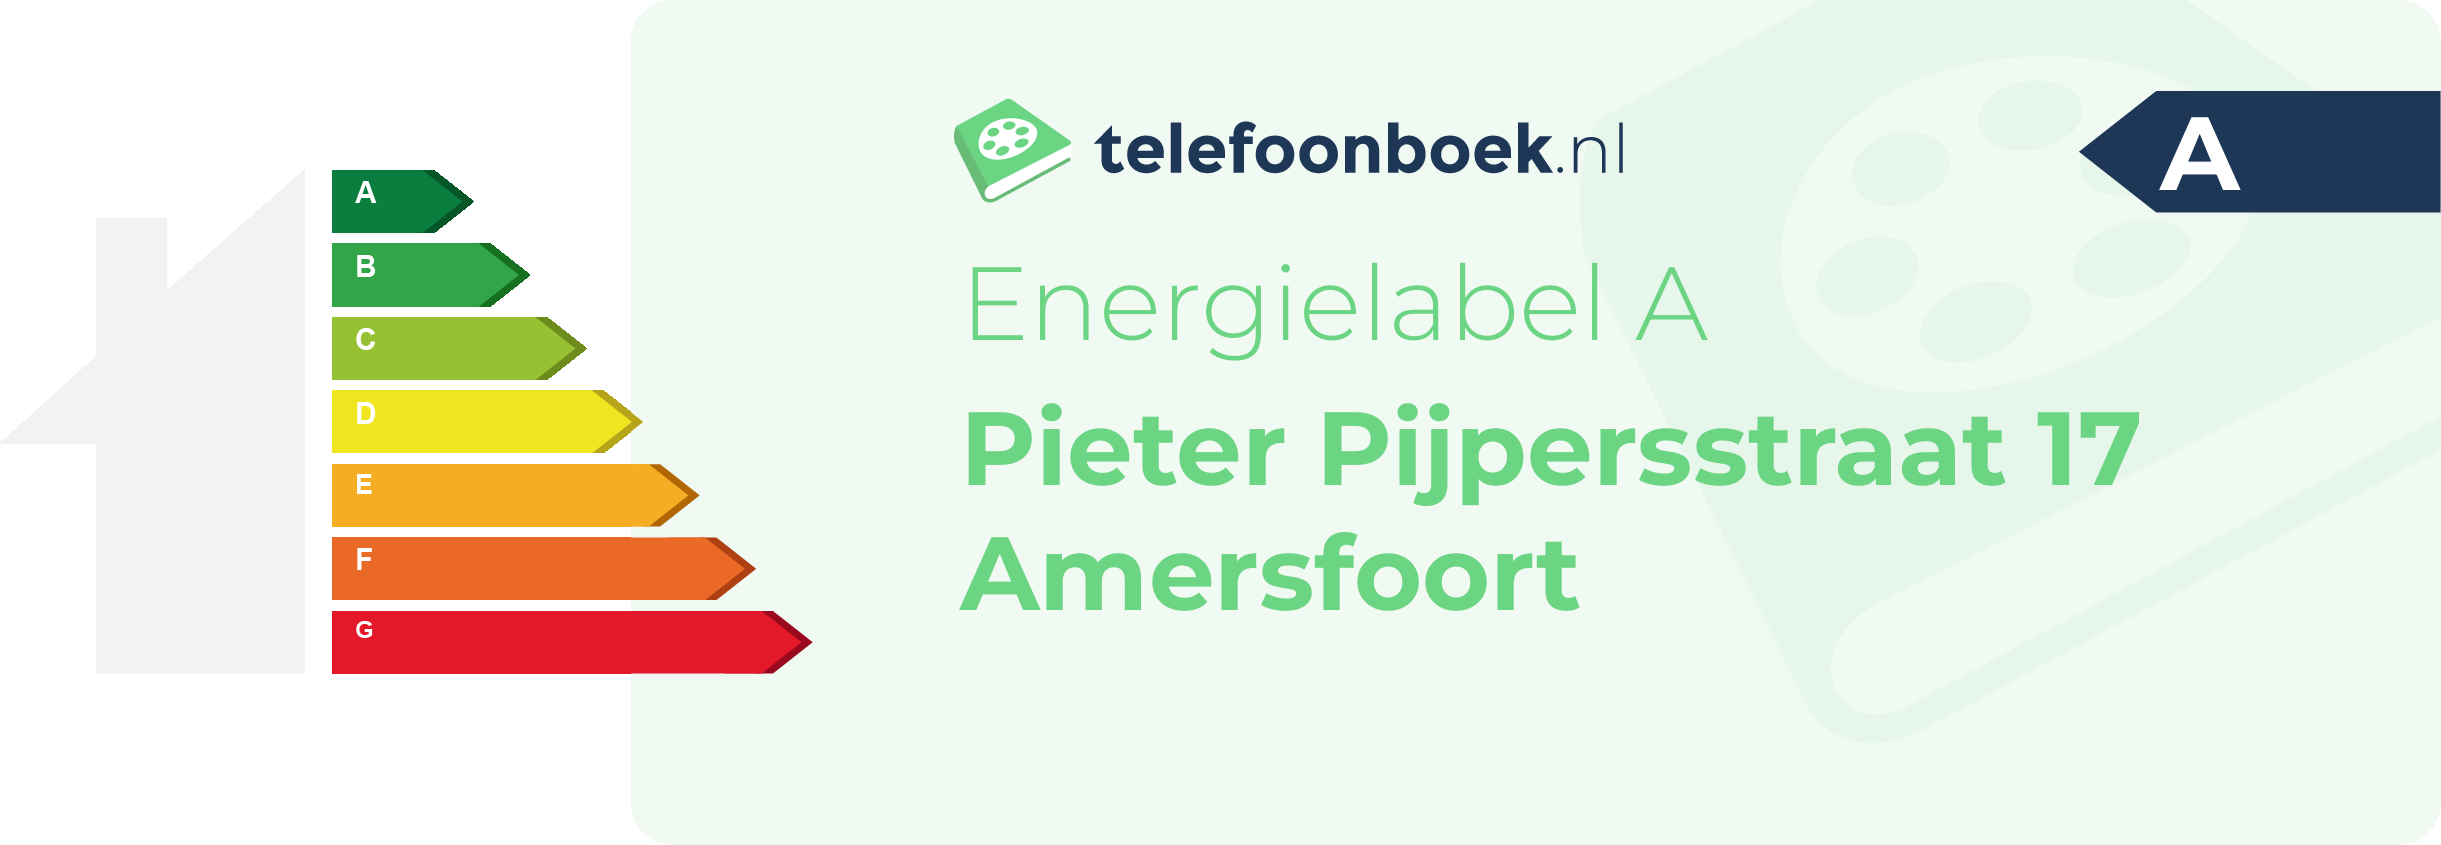 Energielabel Pieter Pijpersstraat 17 Amersfoort